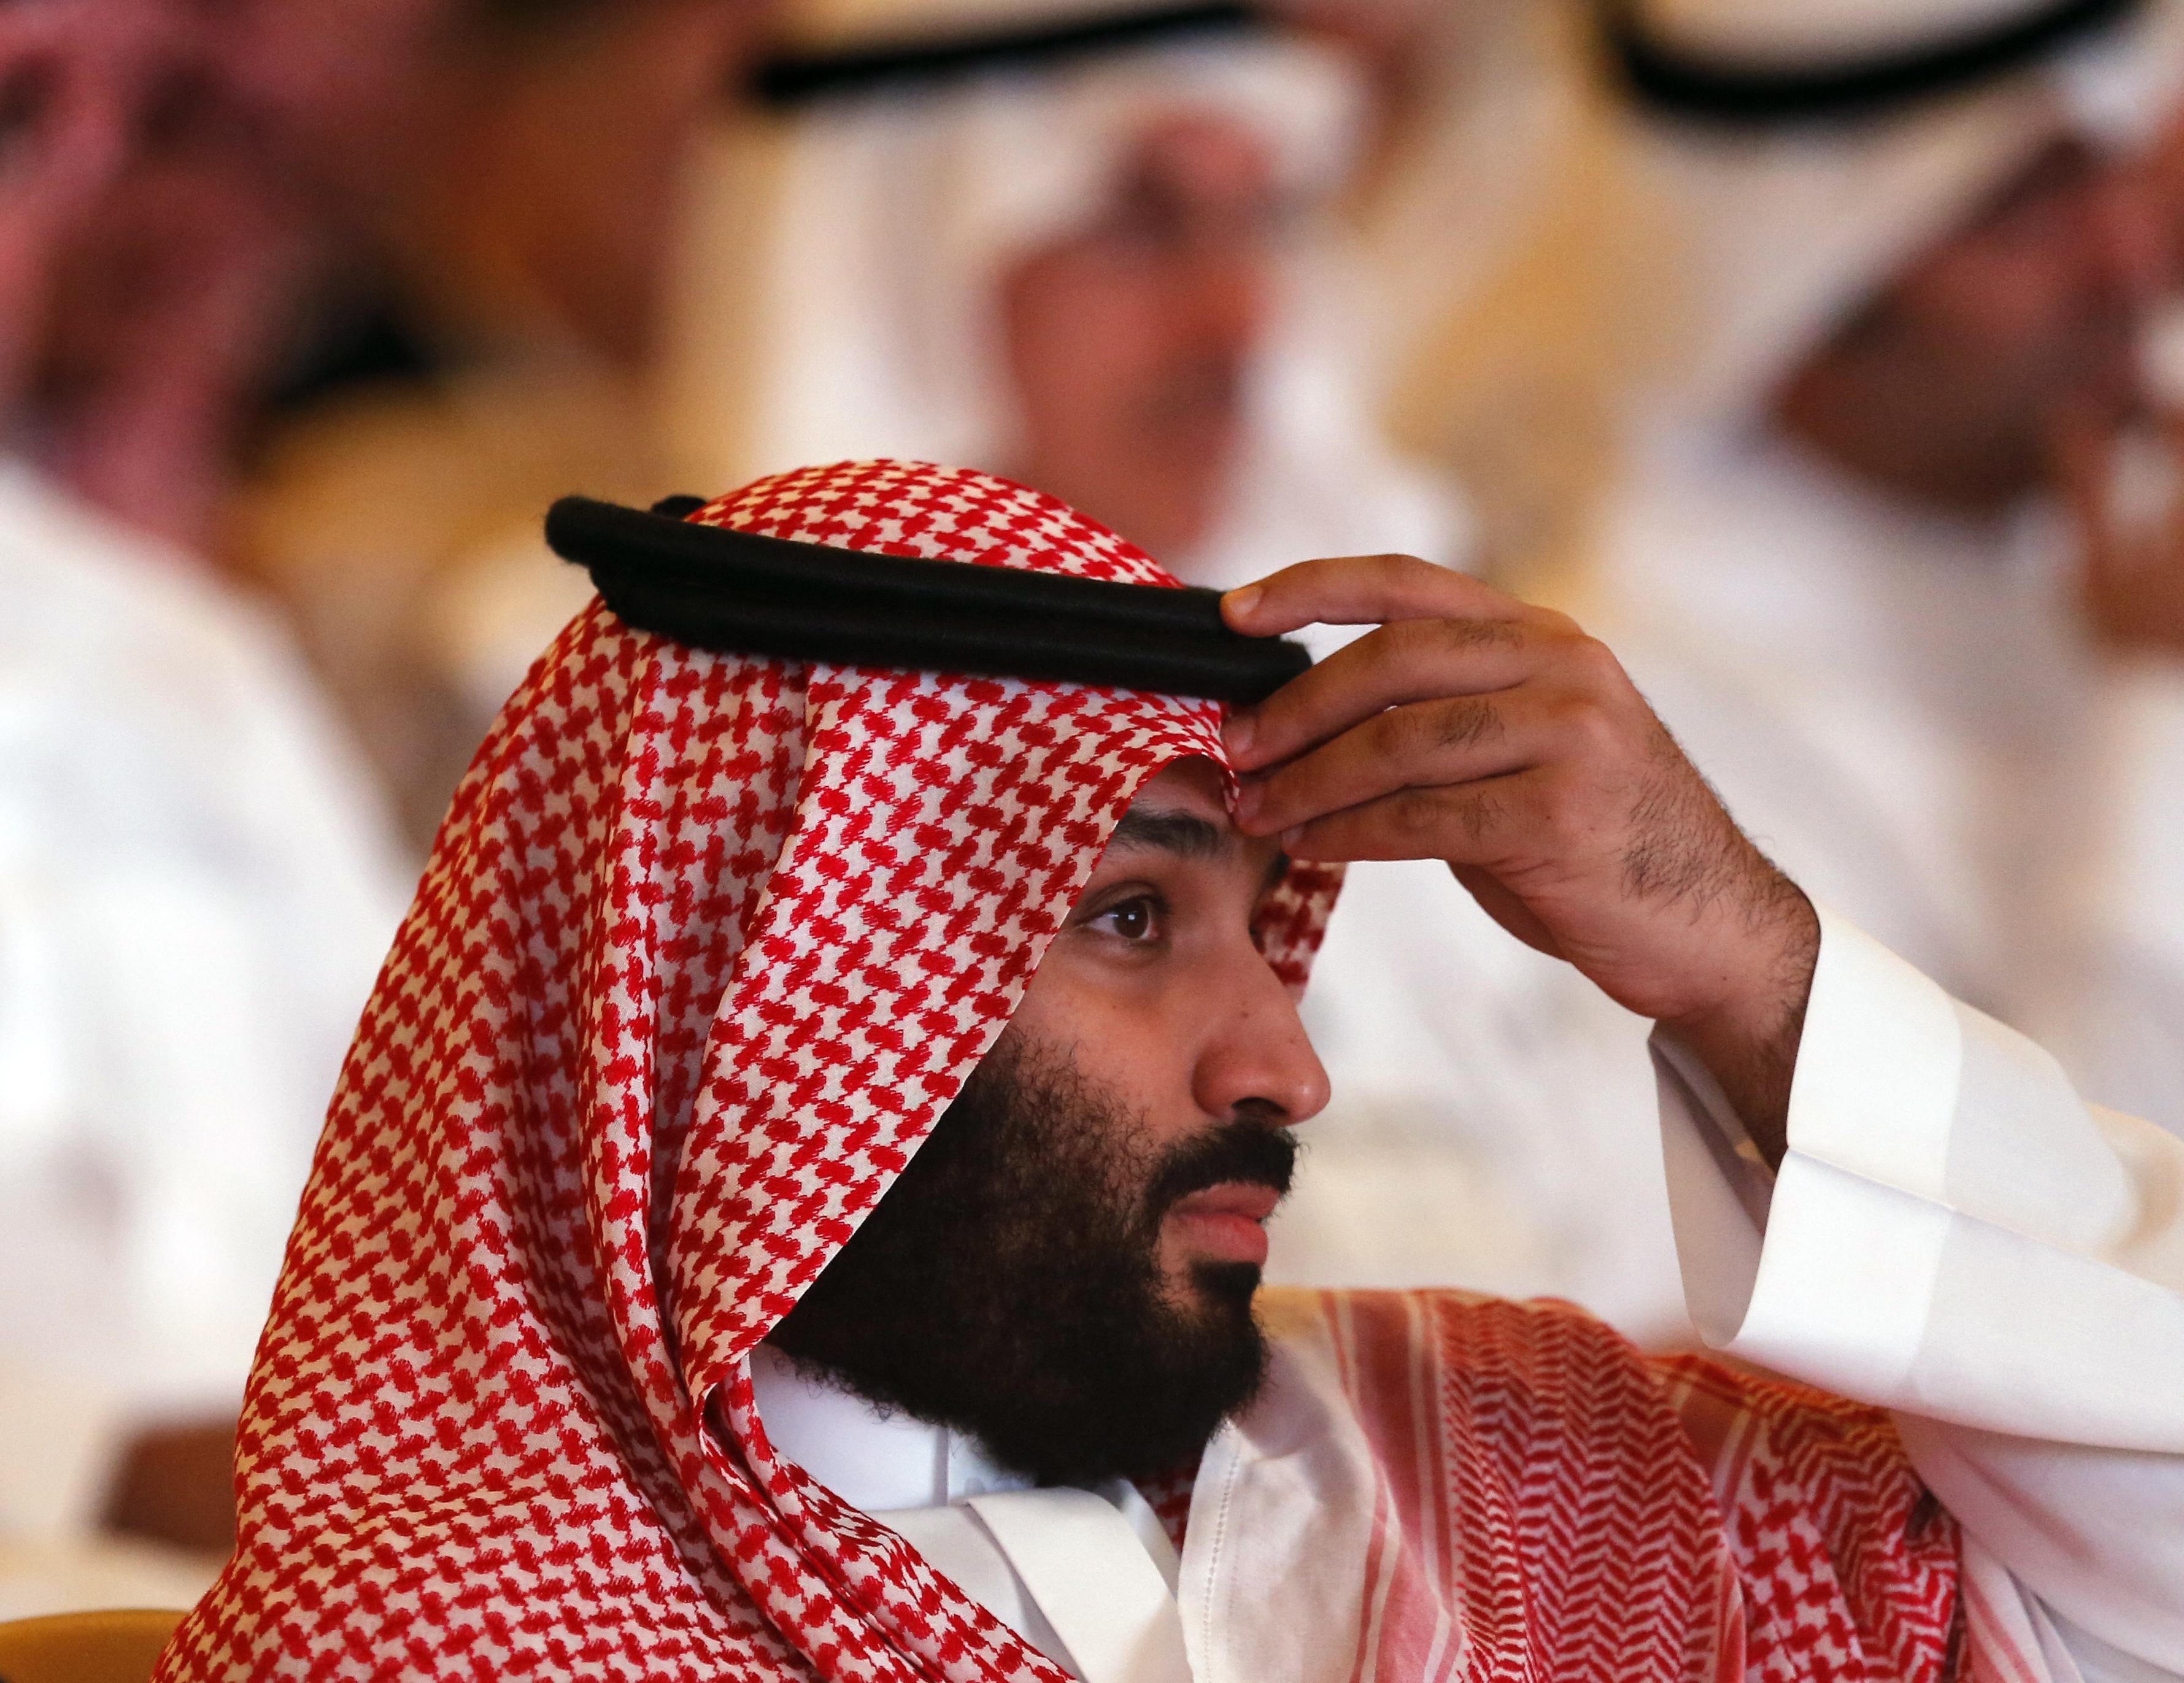 Принцы аль сауды. Принц Салман Саудовская Аравия. Мухаммед Бен Сальман Аль Сауд. Саудовский принц Бадр ибн Сауд. Мухаммед ибн Салман Аль Сауд политики.